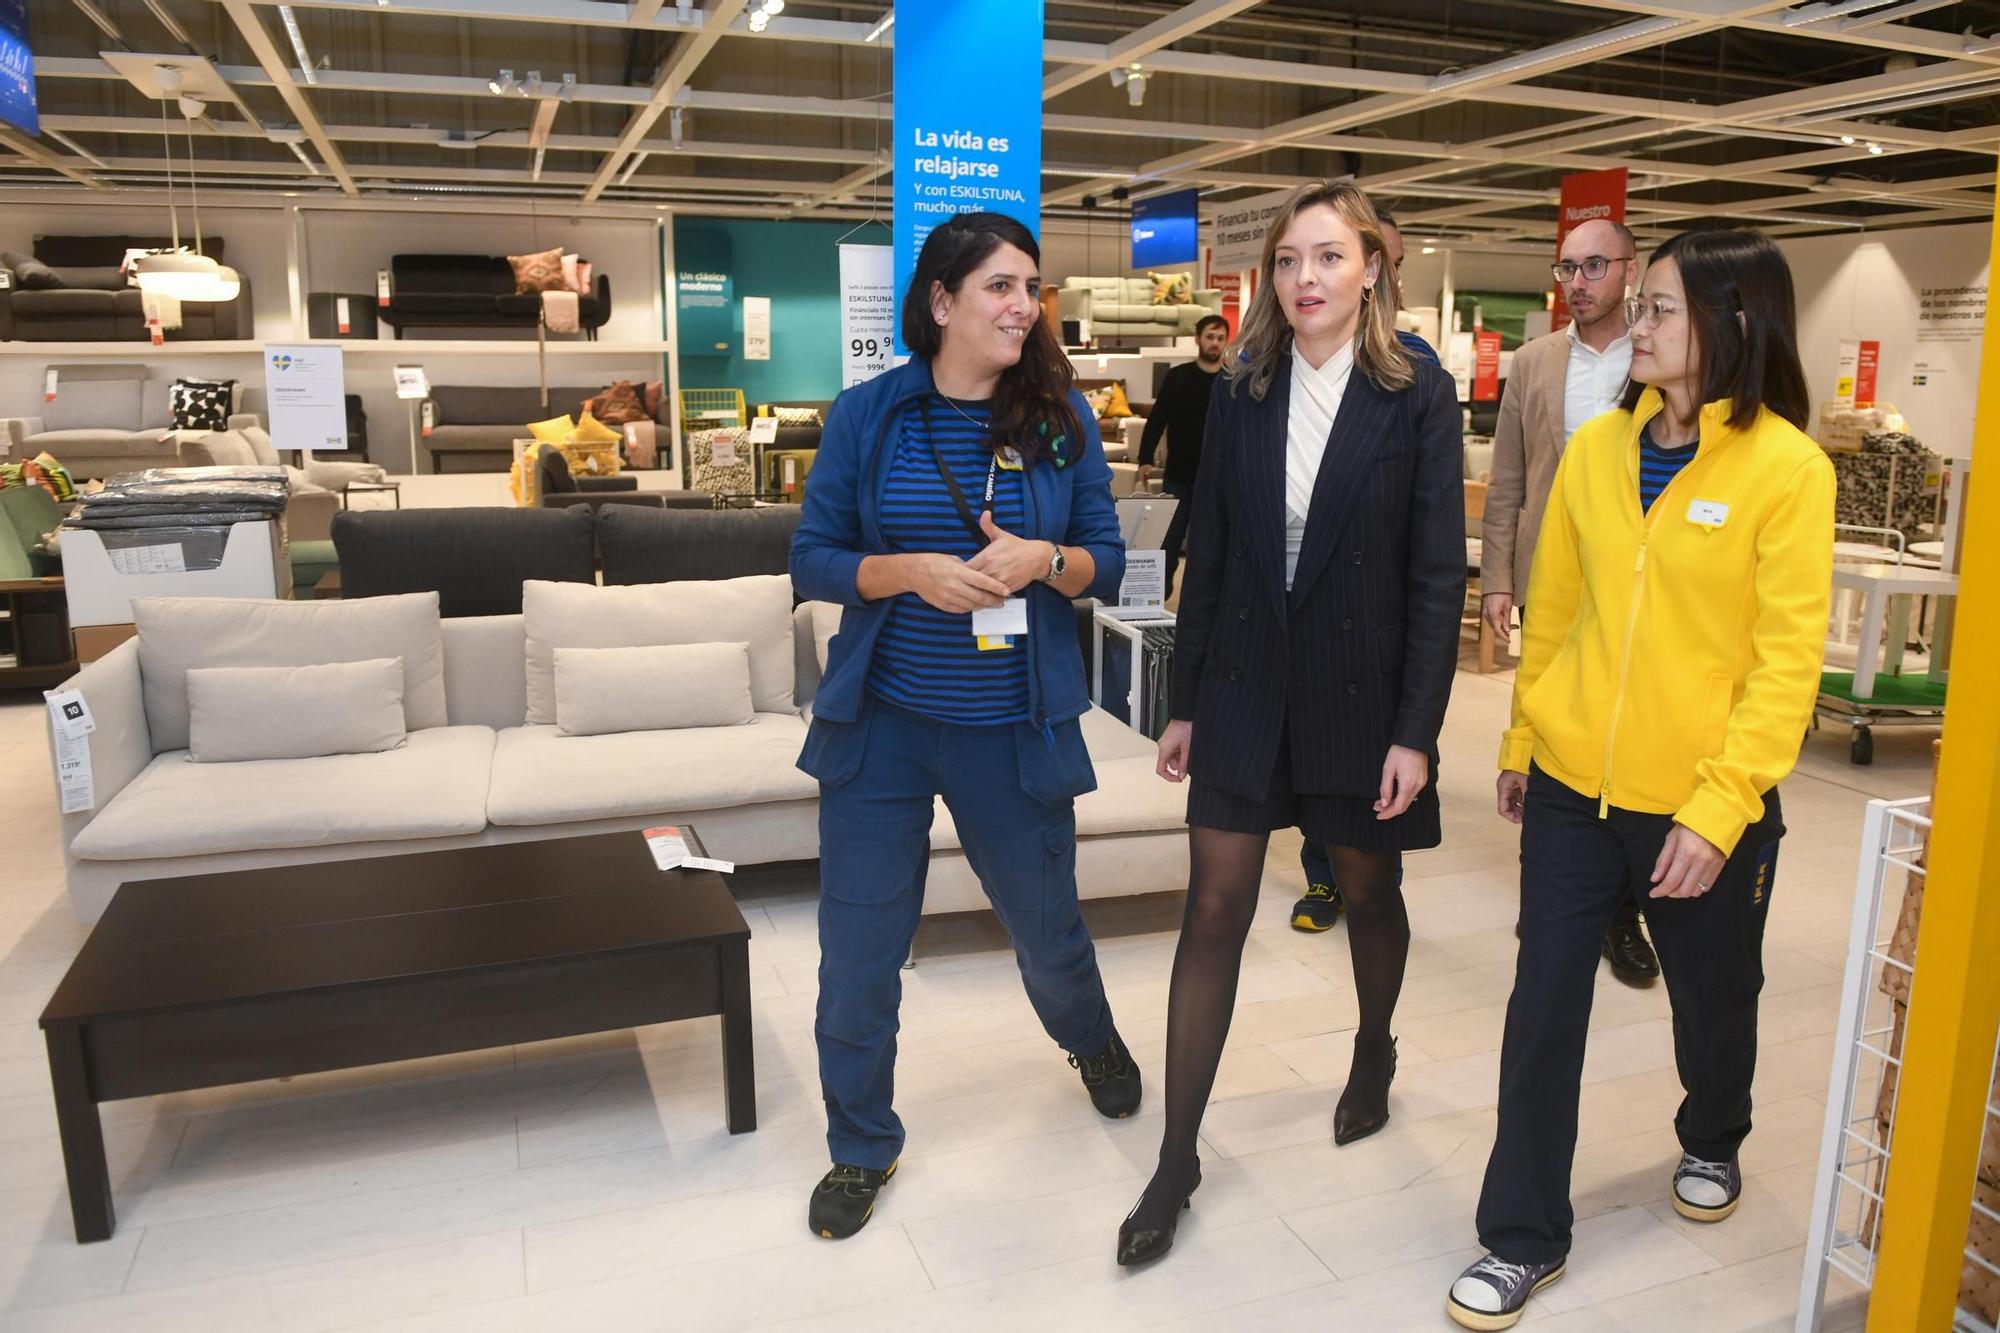 Los padres gallegos podrán utilizar la Tarxeta Benvida en las tiendas Ikea de la comunidad